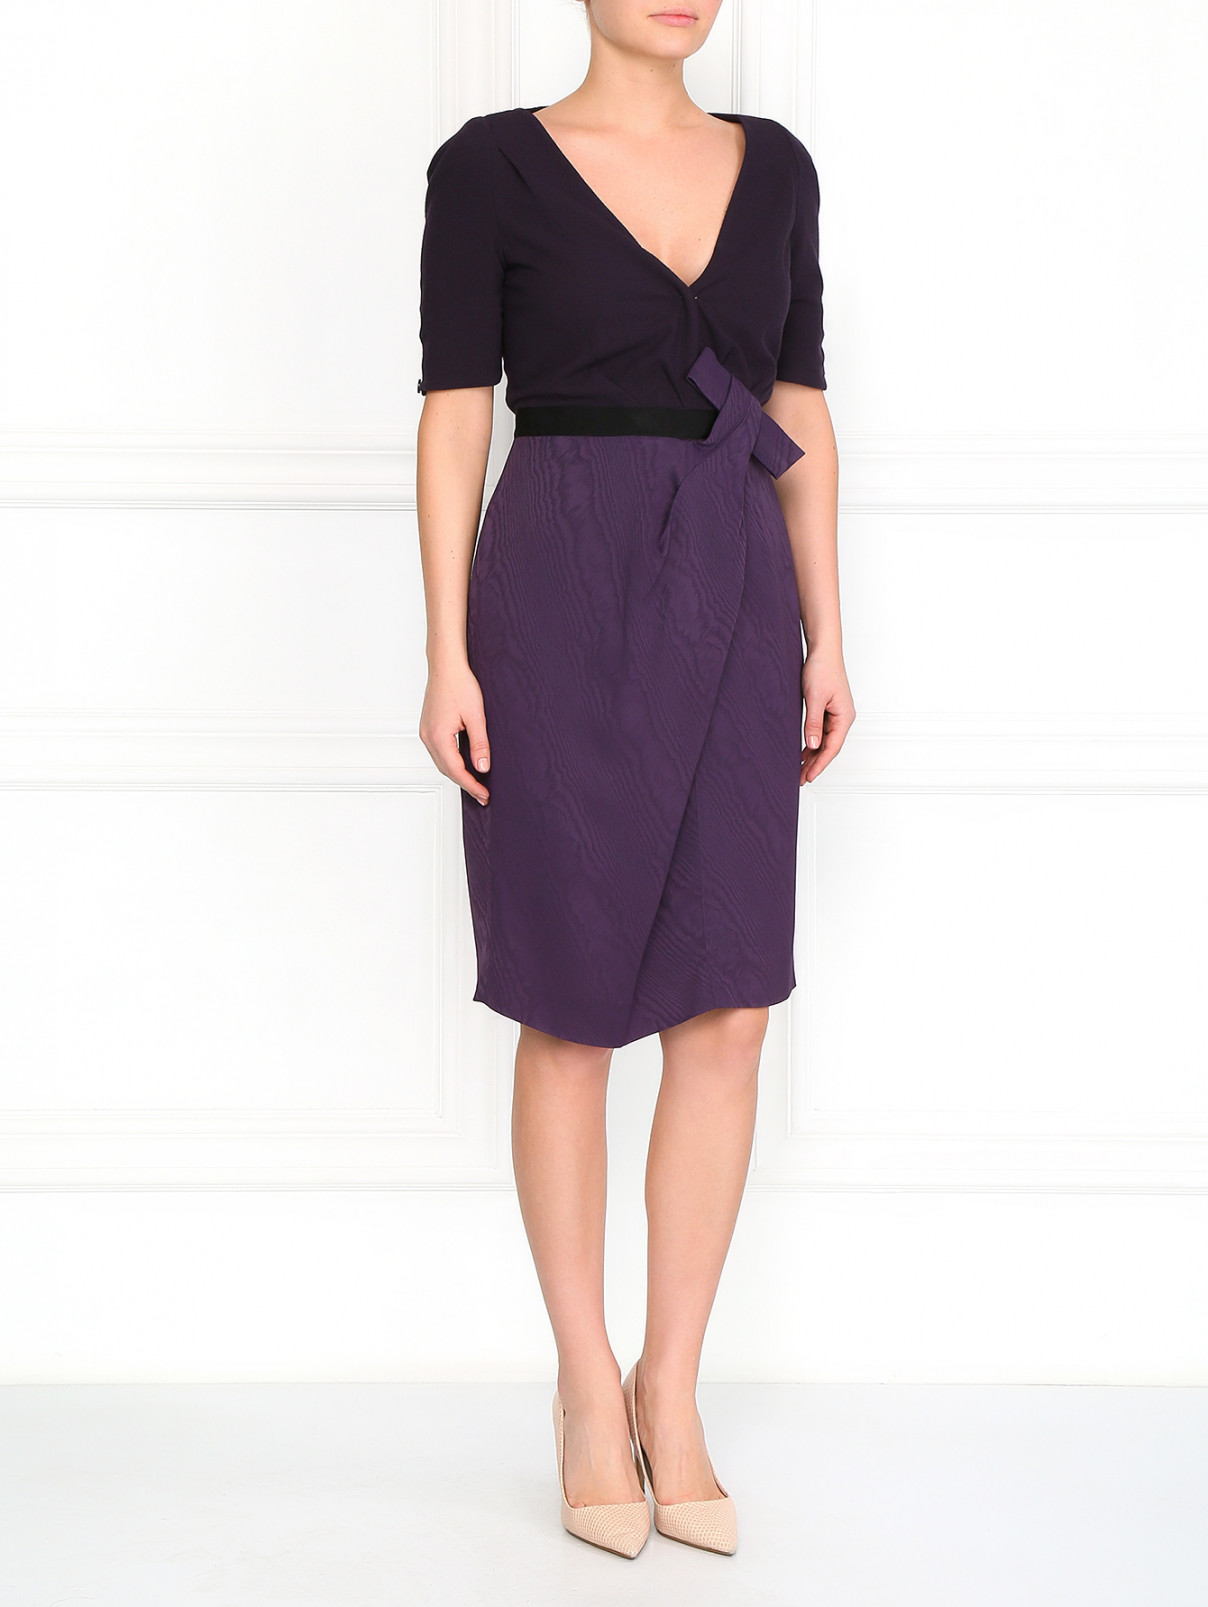 Платье с запахом Antonio Marras  –  Модель Общий вид  – Цвет:  Фиолетовый